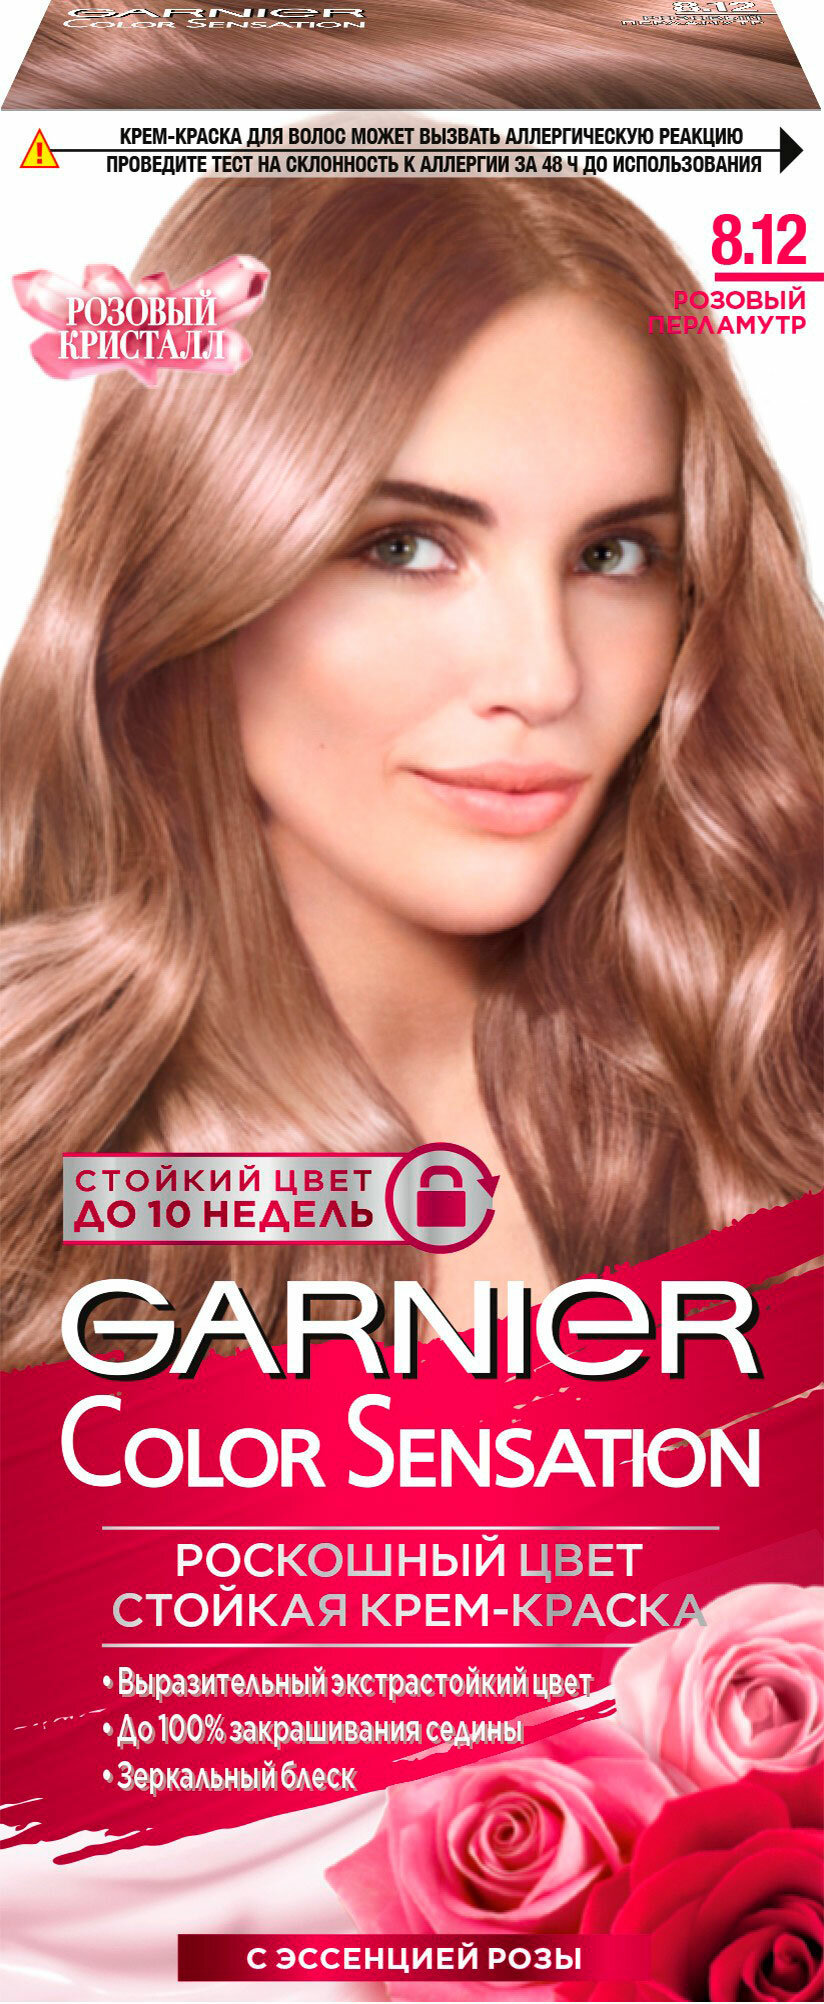 Garnier Color Sensation стойкая крем-краска для волос 8.12 Розовый перламутр